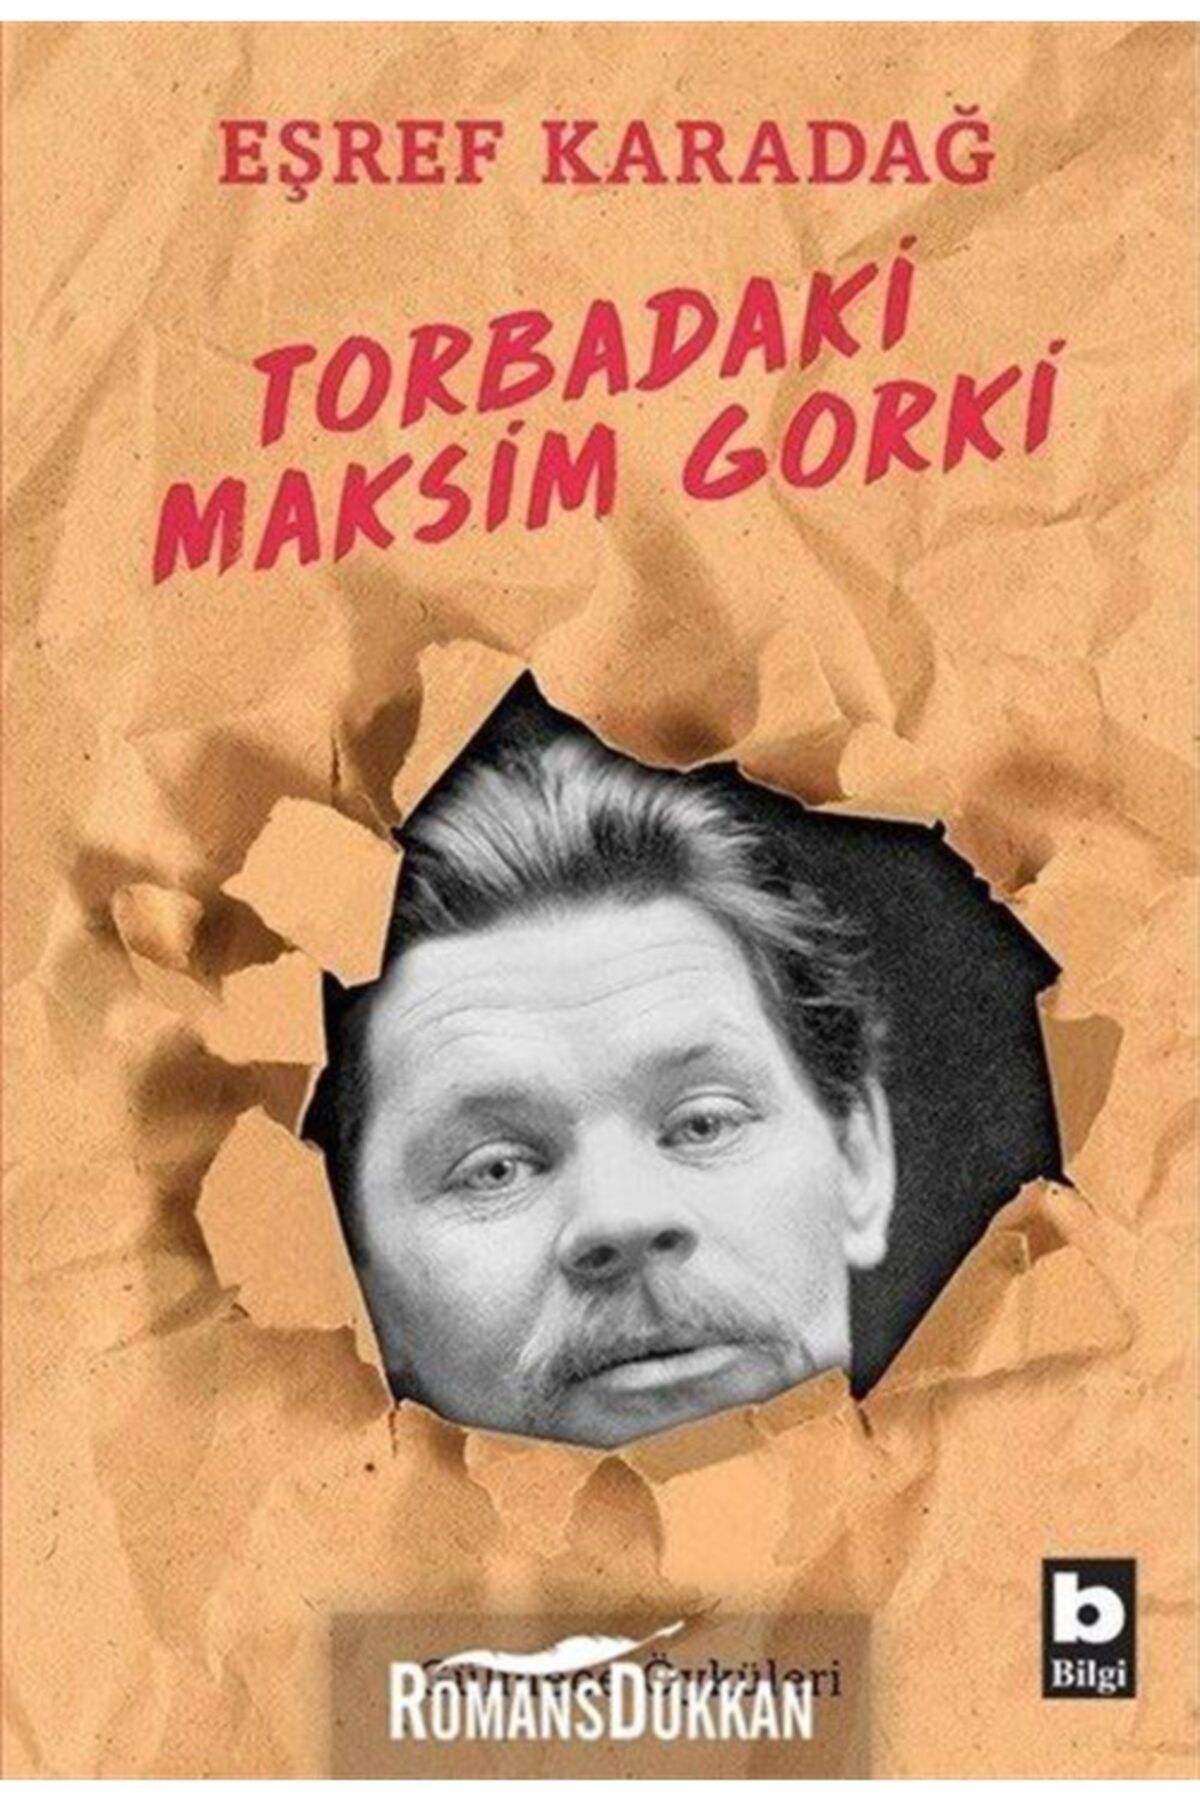 Bilgi Yayınları Torbadaki Maksim Gorki - Eşref Karadağ